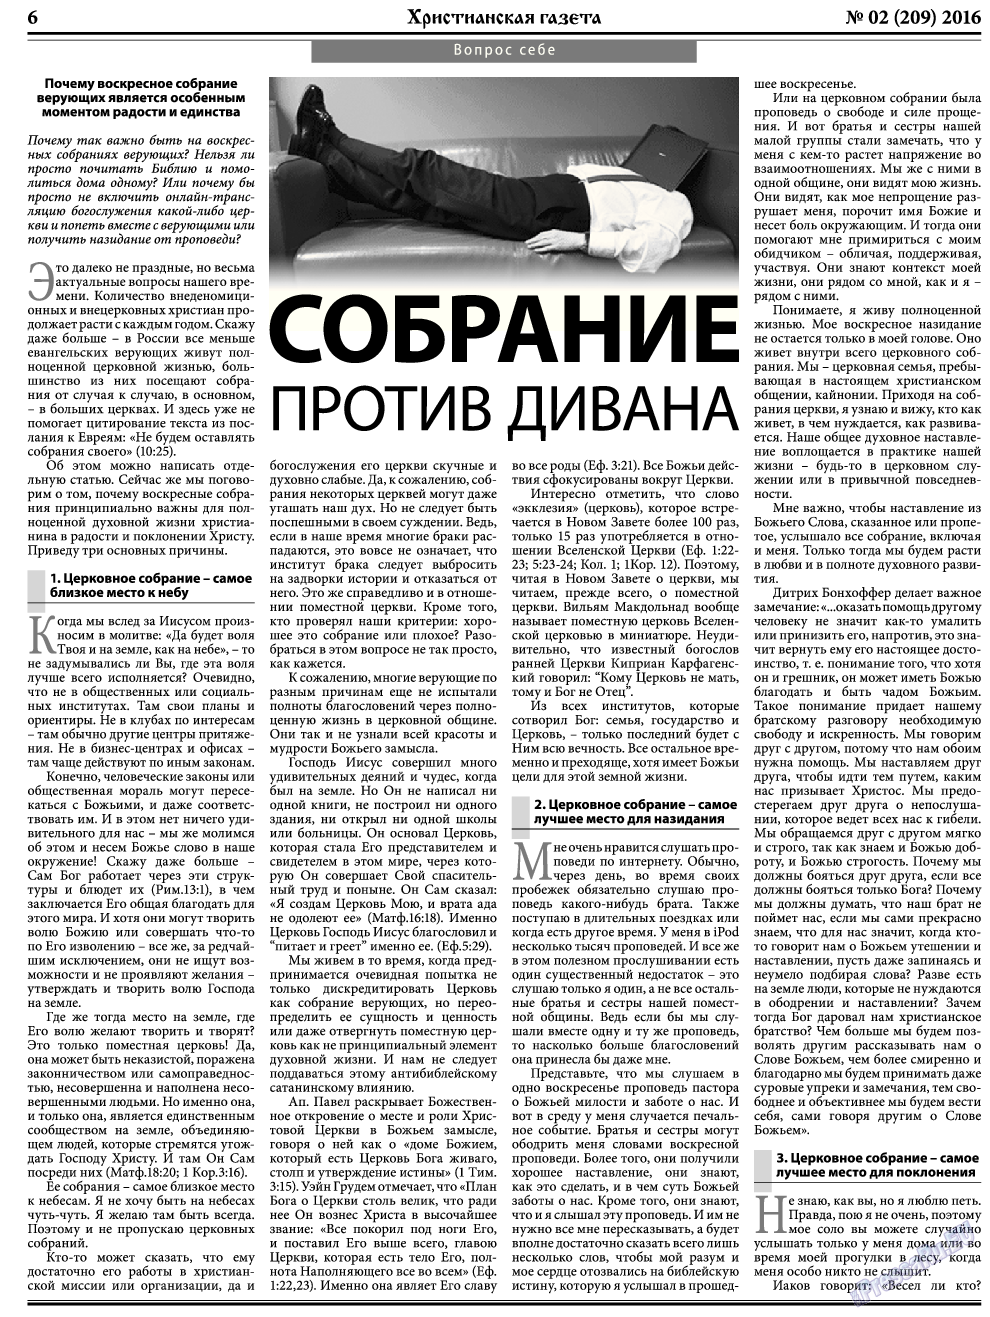 Христианская газета, газета. 2016 №2 стр.6